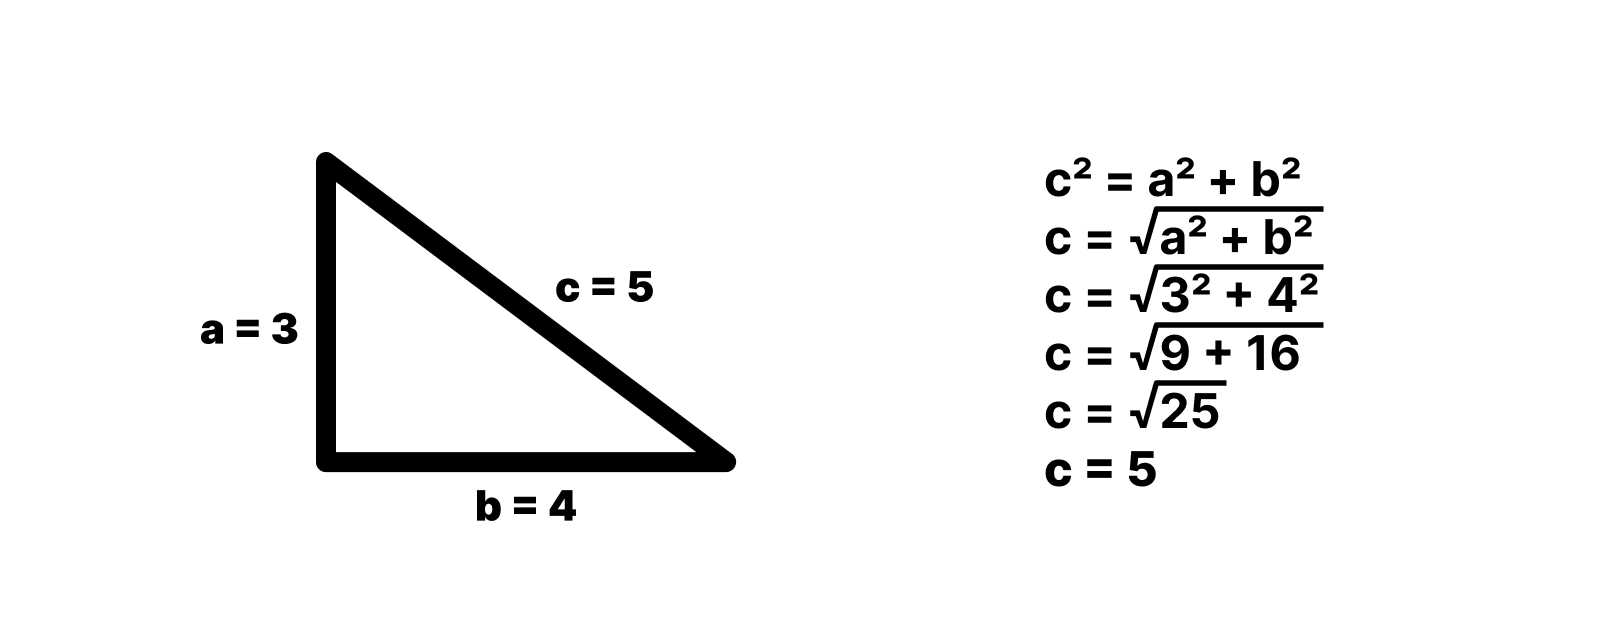 Calcul hypoténuse pour un triangle rectangle avec des cotés de longueur 3 et 4